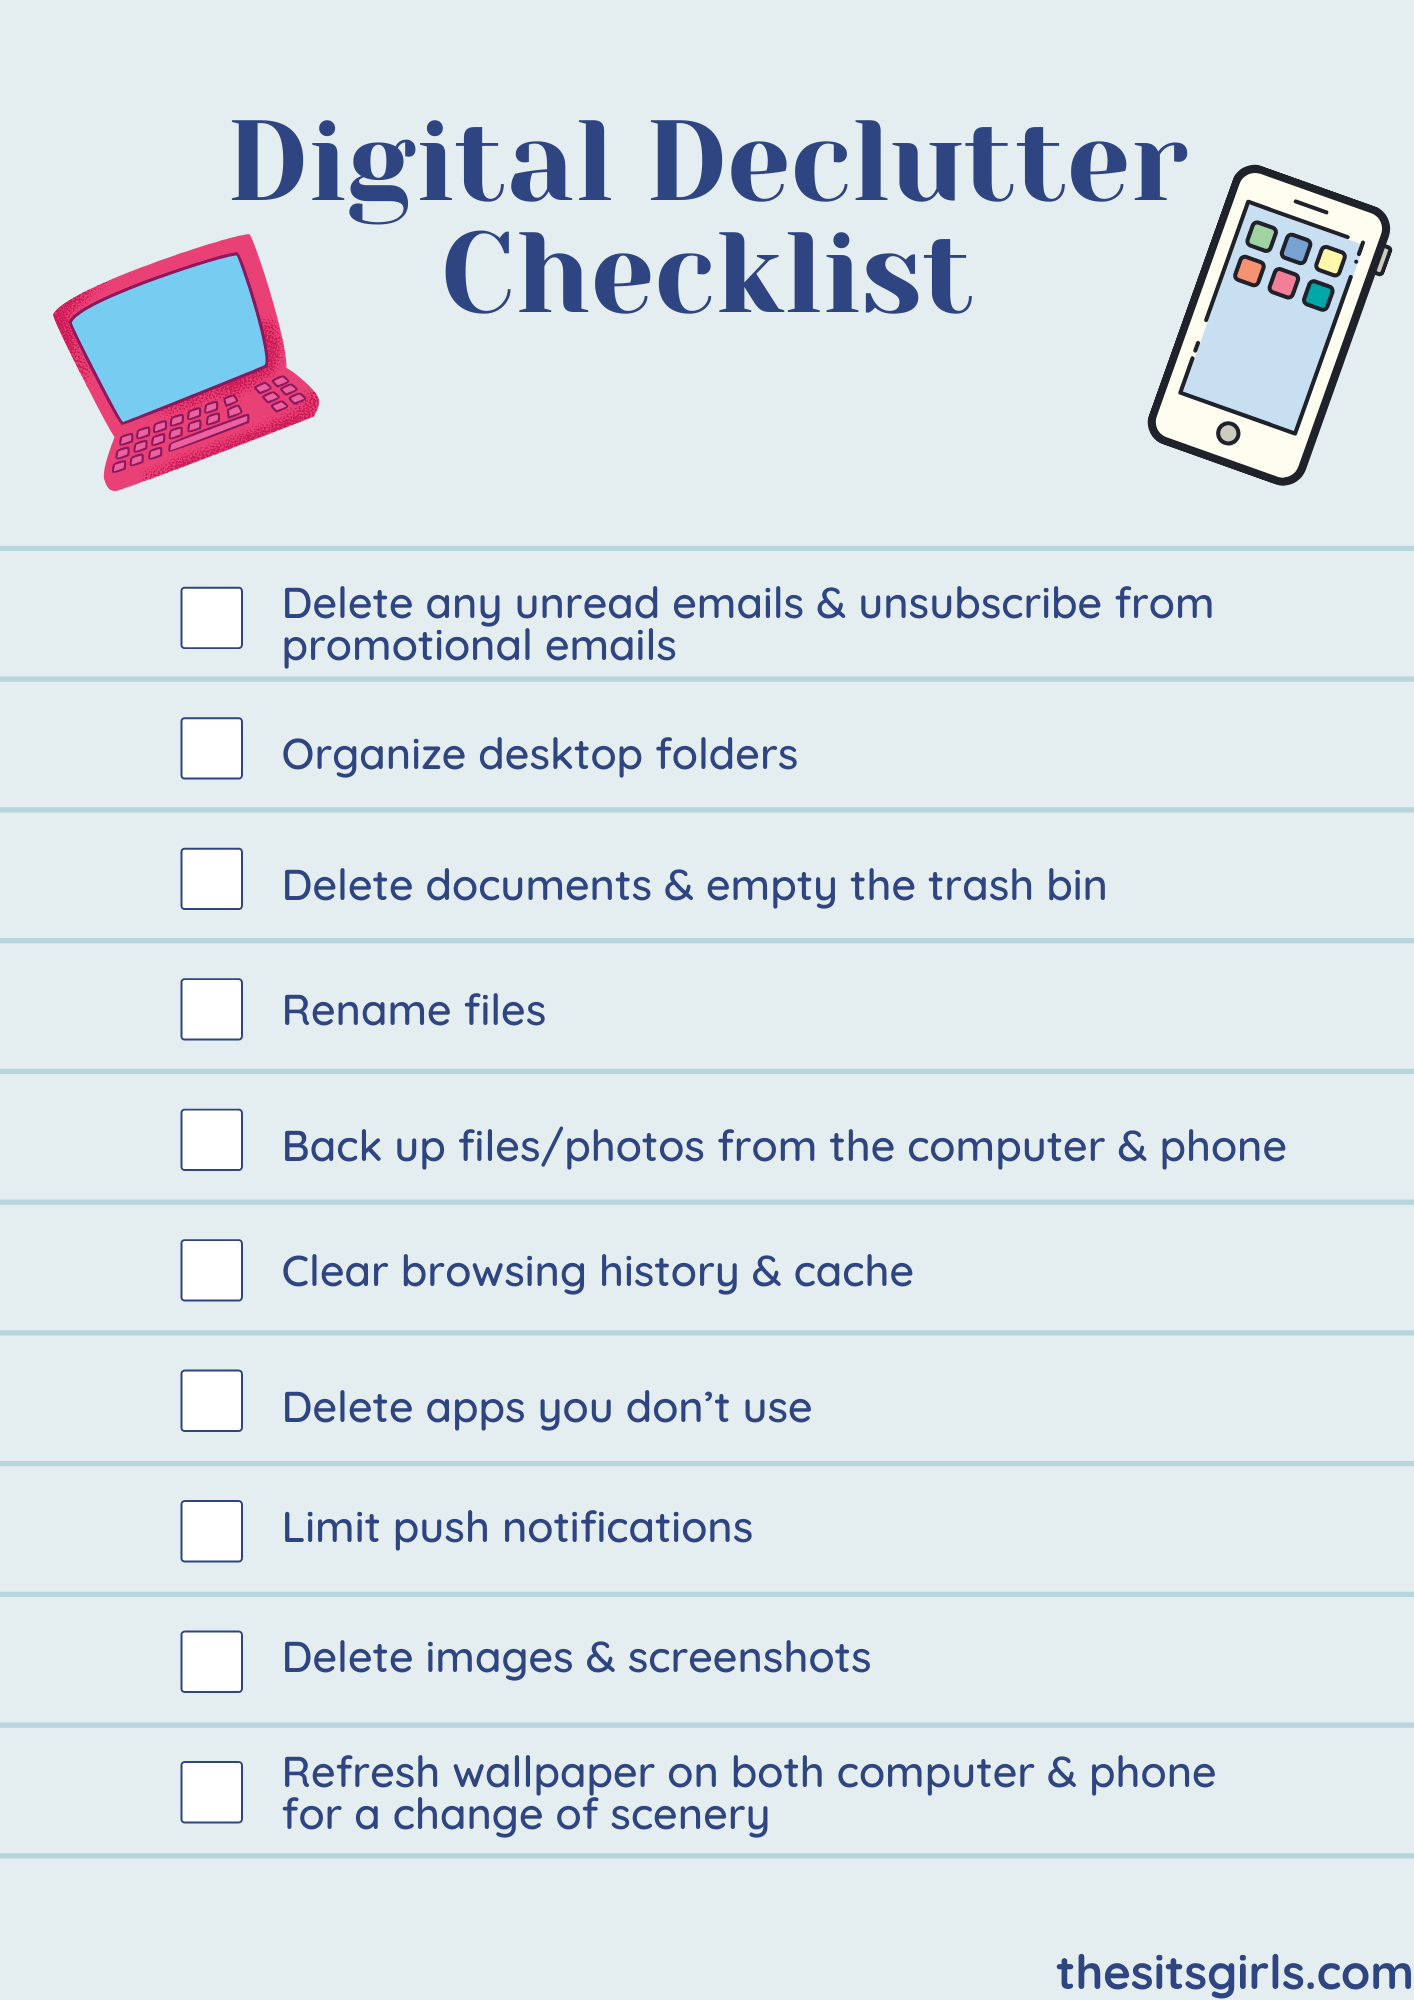 Digital Declutter Checklist with ten tasks to help you get organized.